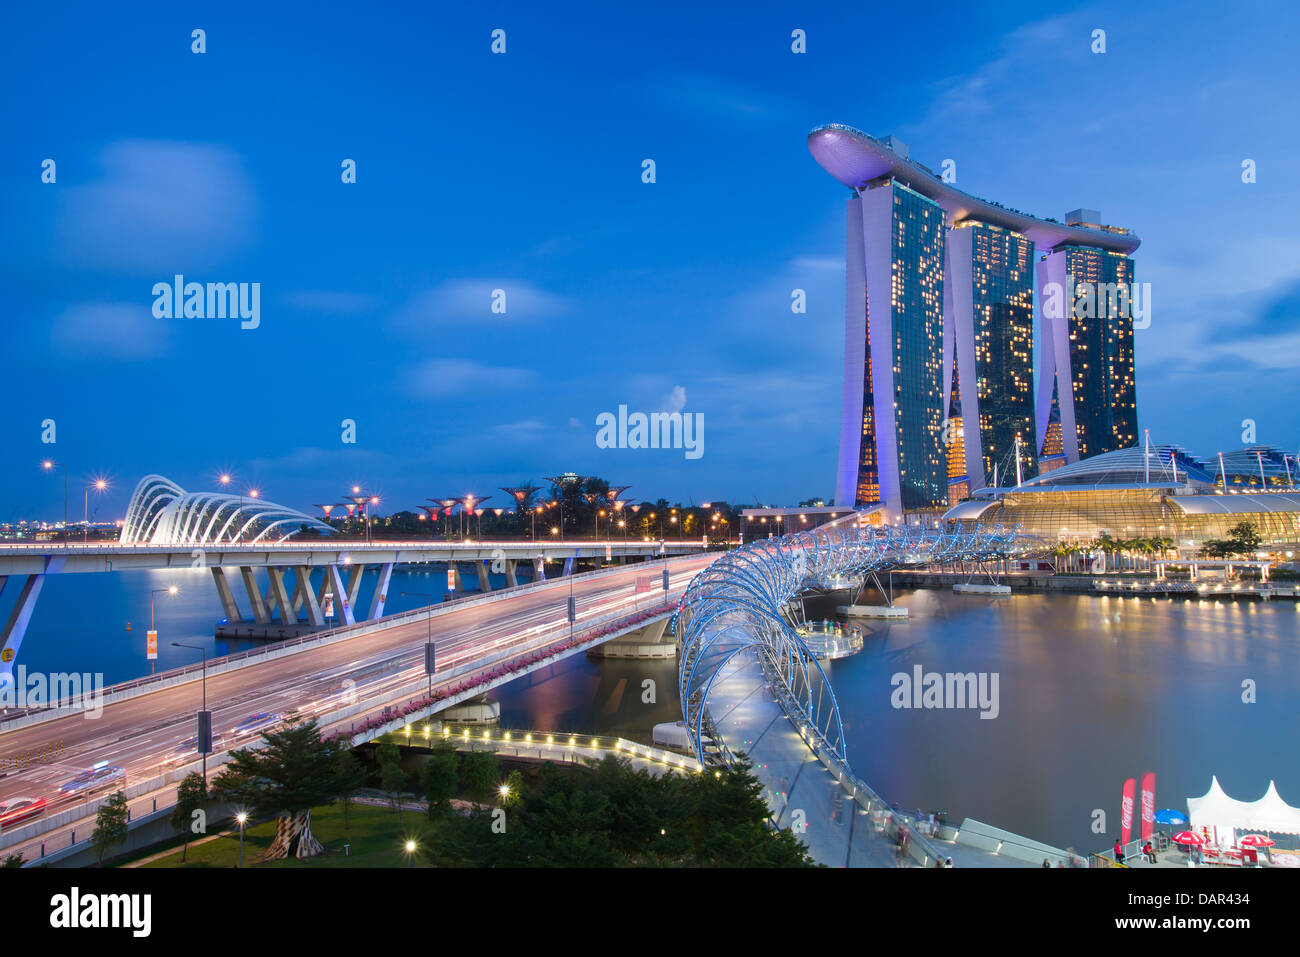 Singapore Marina Bay Sands Casino and Resort Stock Photo